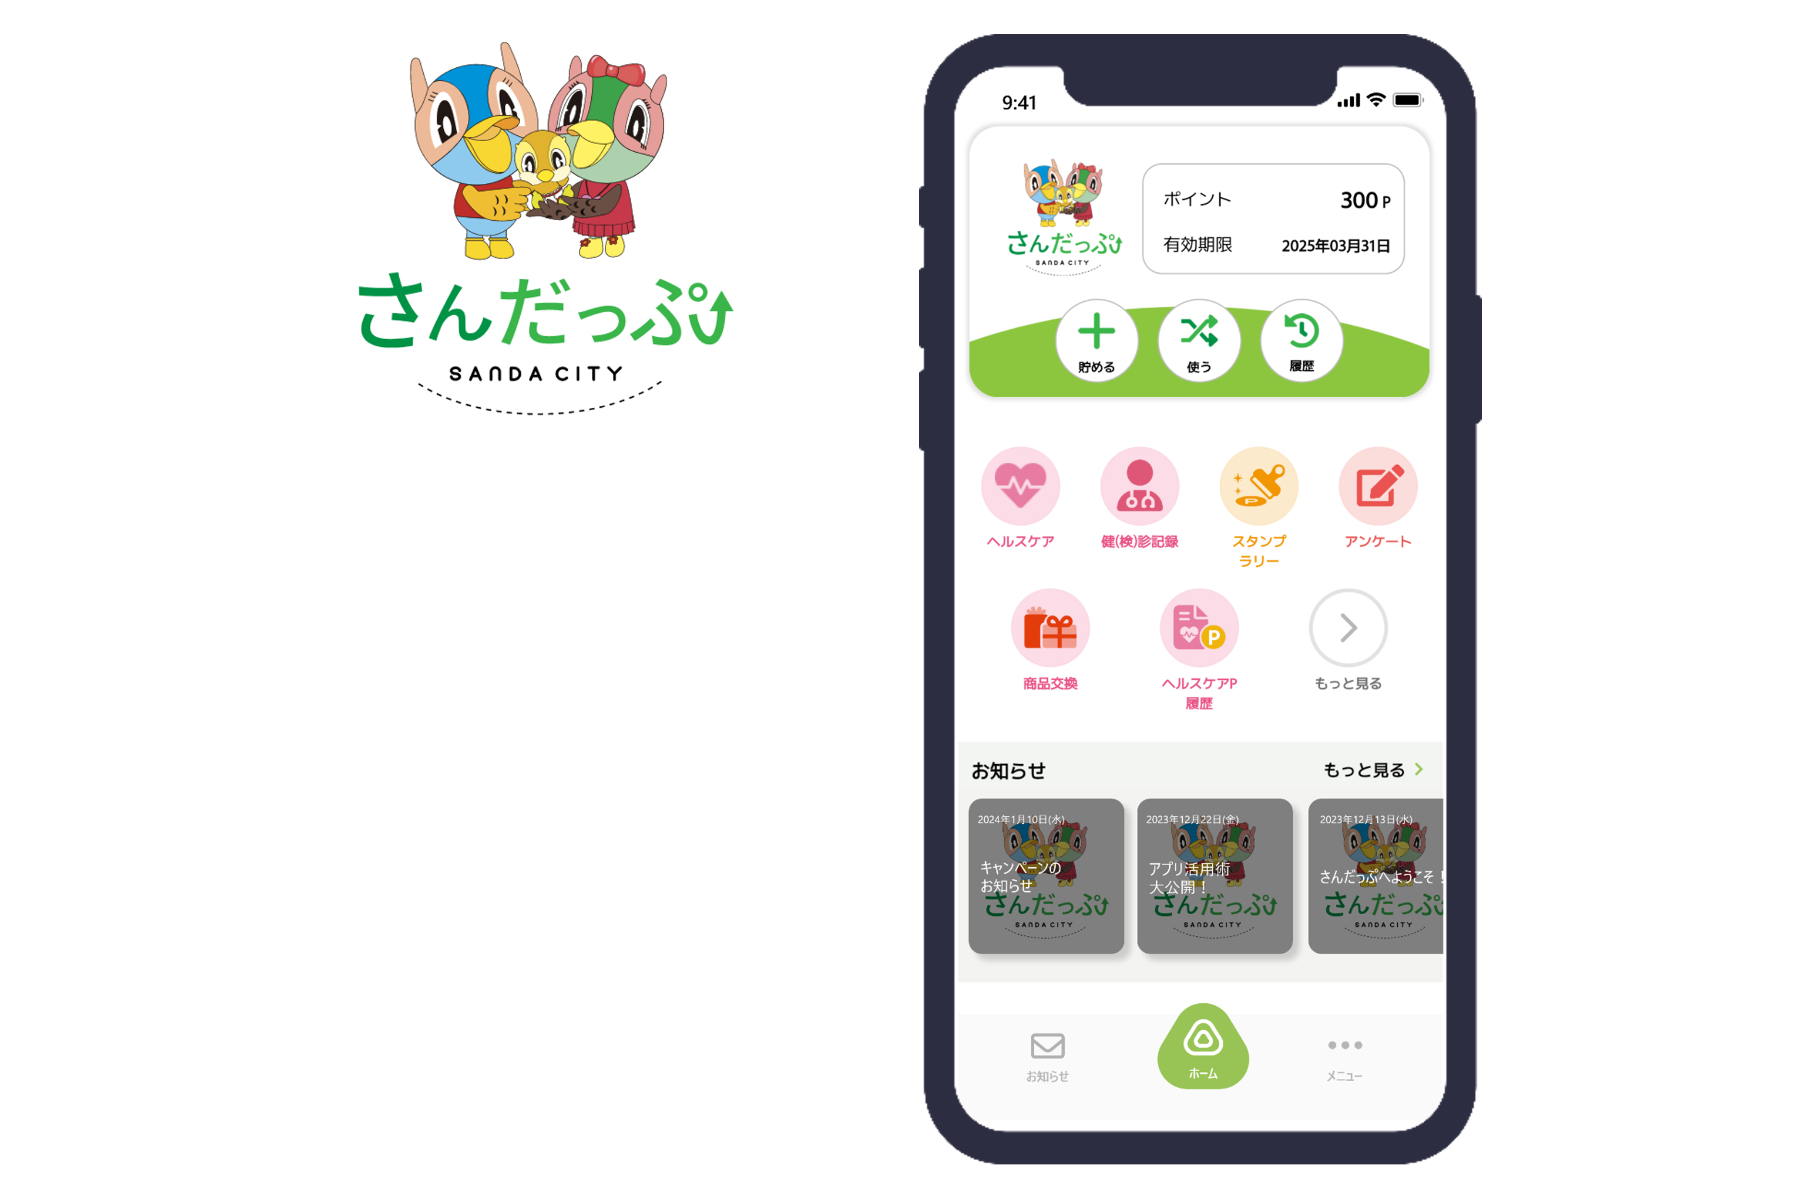 兵庫県三田市、ポイント型市民健康アプリのリリースを開始[ニュース]